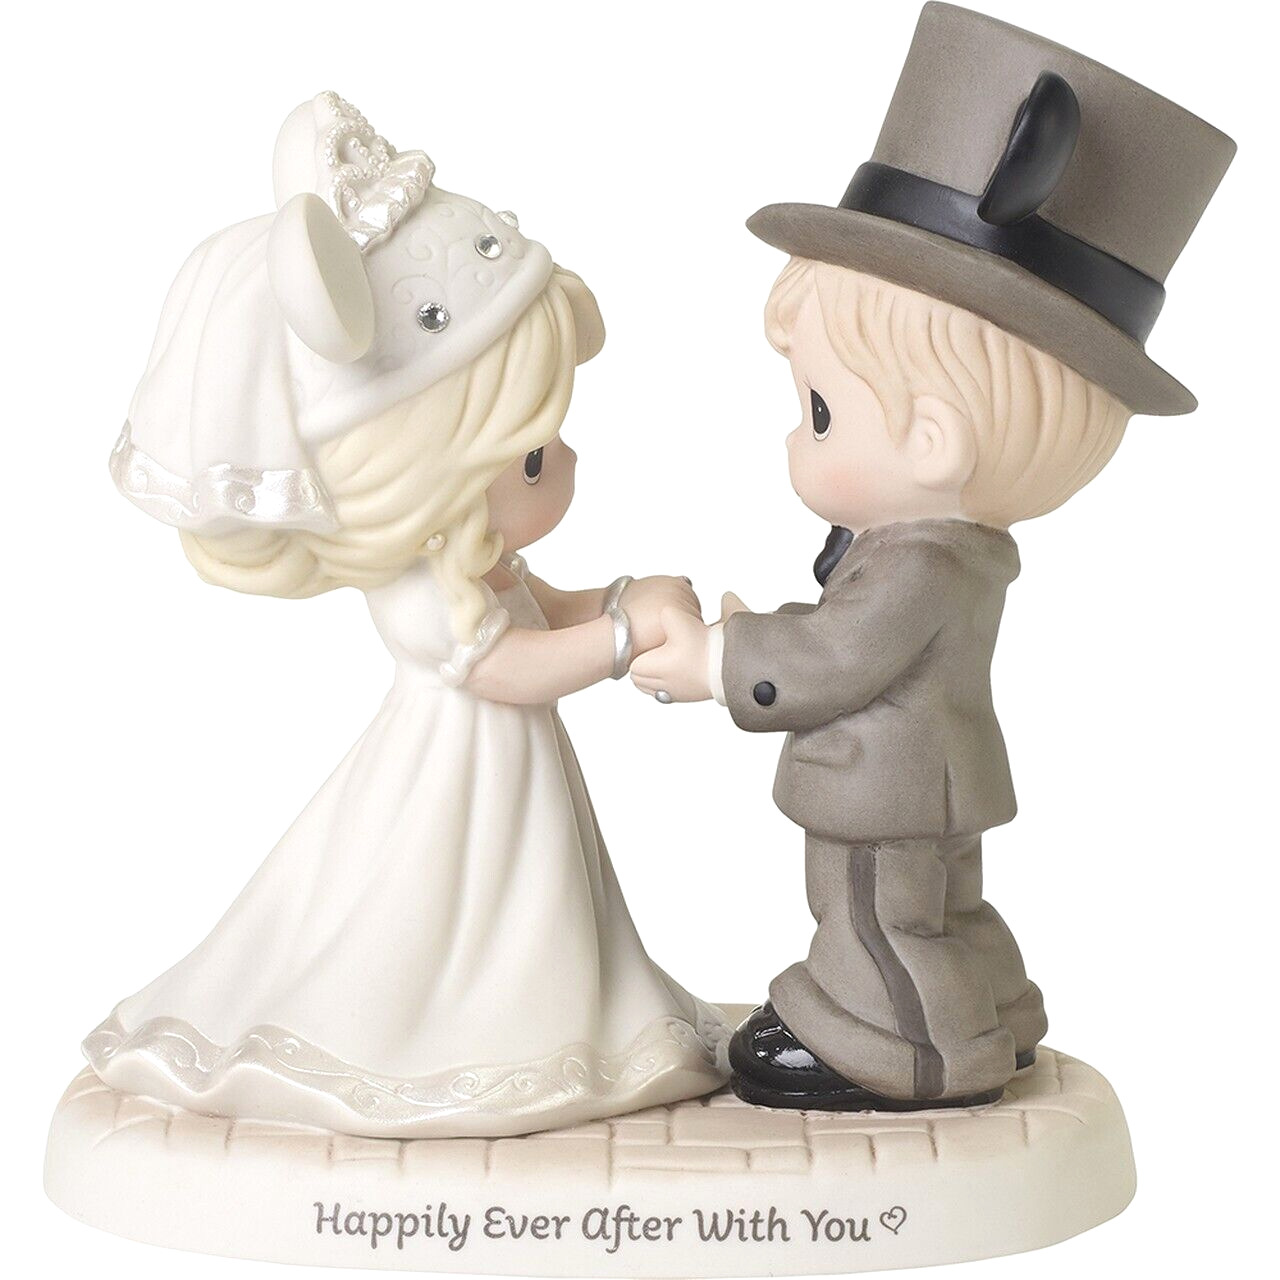 ღ New PRECIOUS MOMENTS DISNEY Figurine HAPPILY EVER AFTER Mickey Minnie Wedding